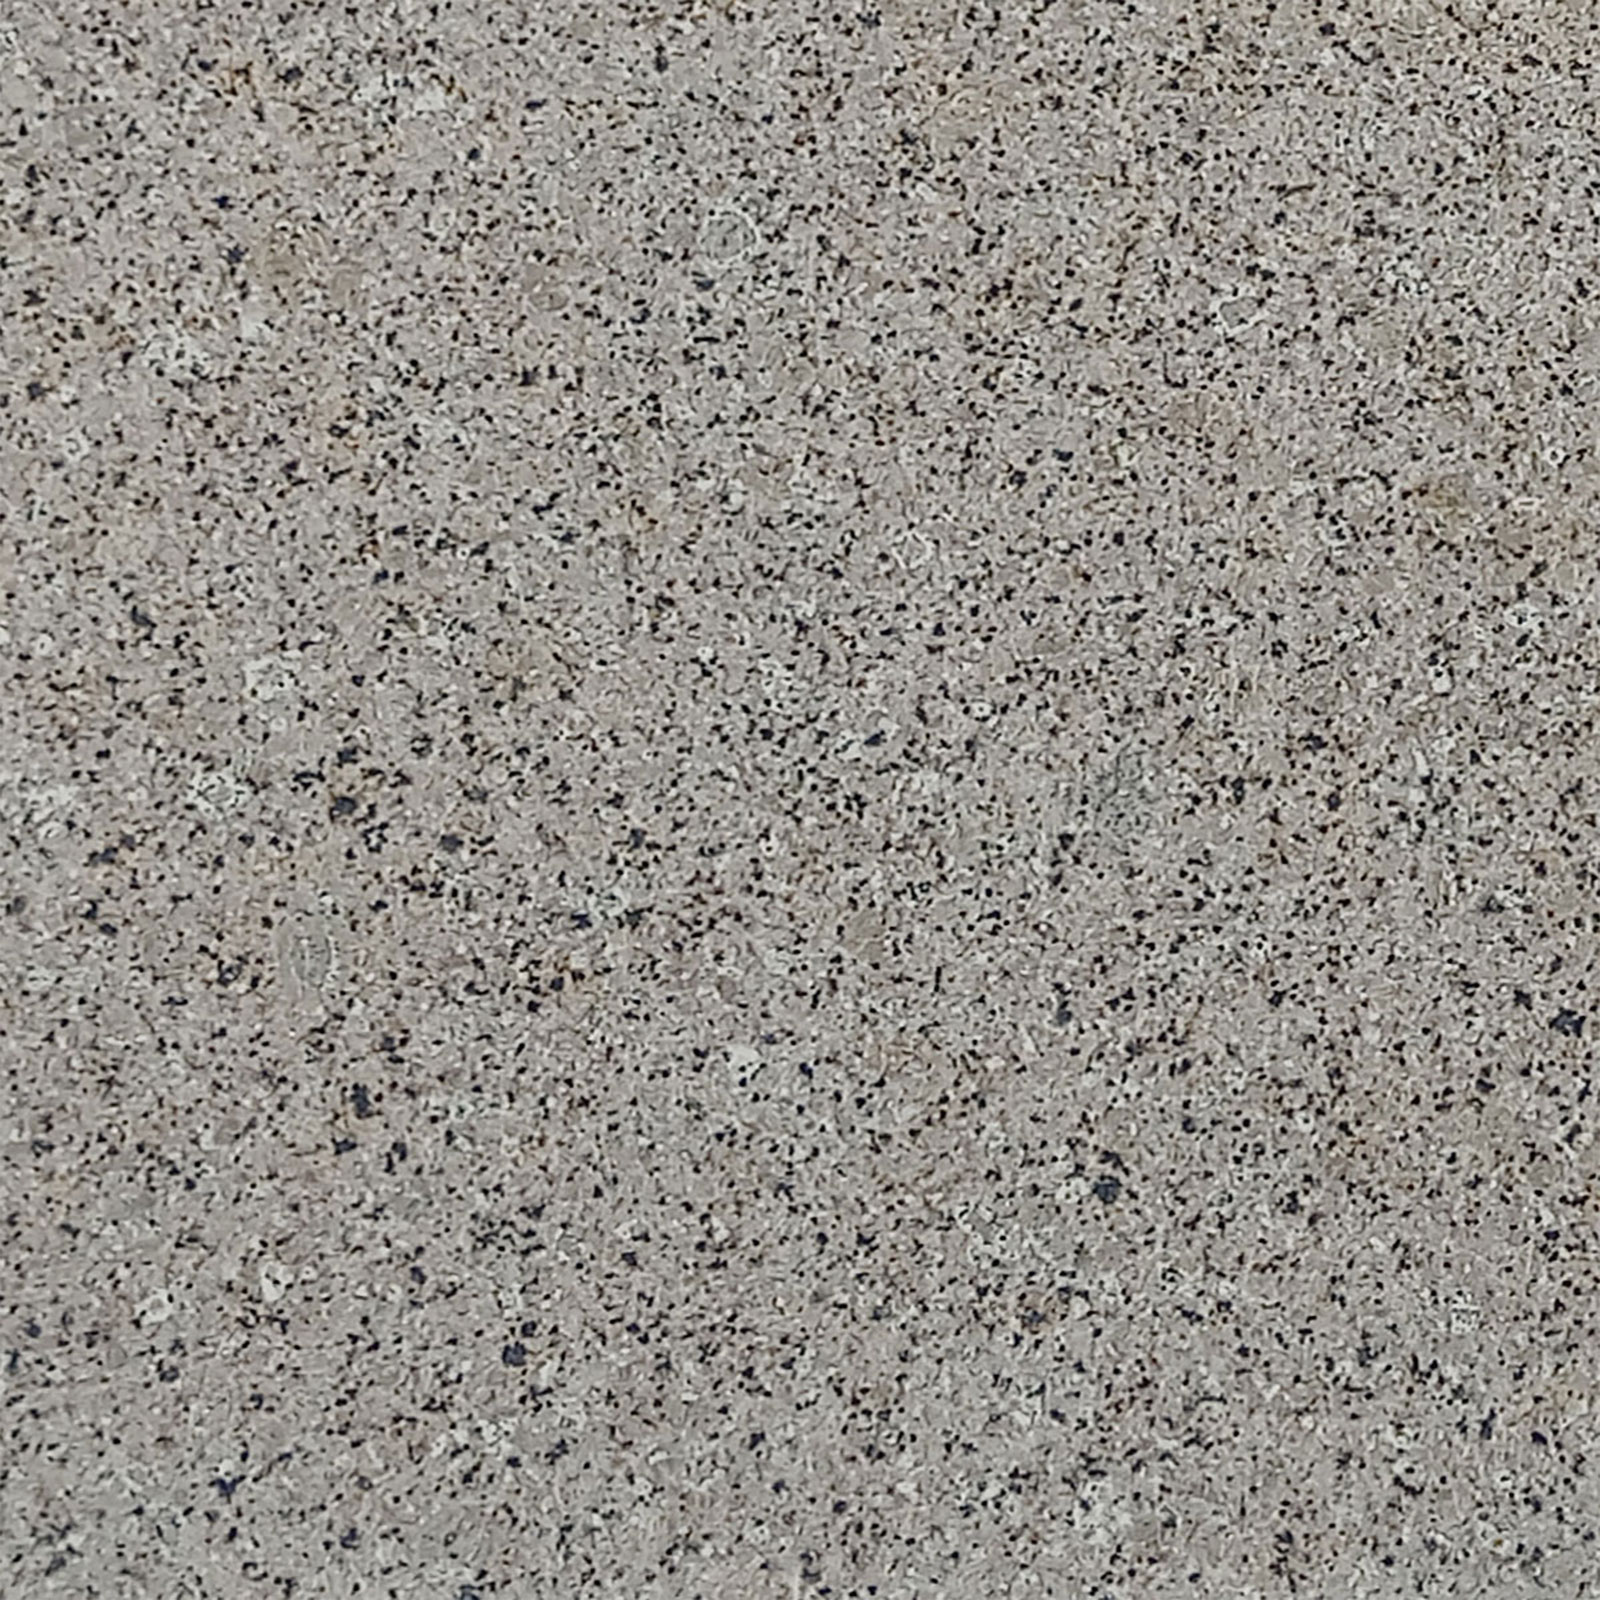 Maliwad Granite